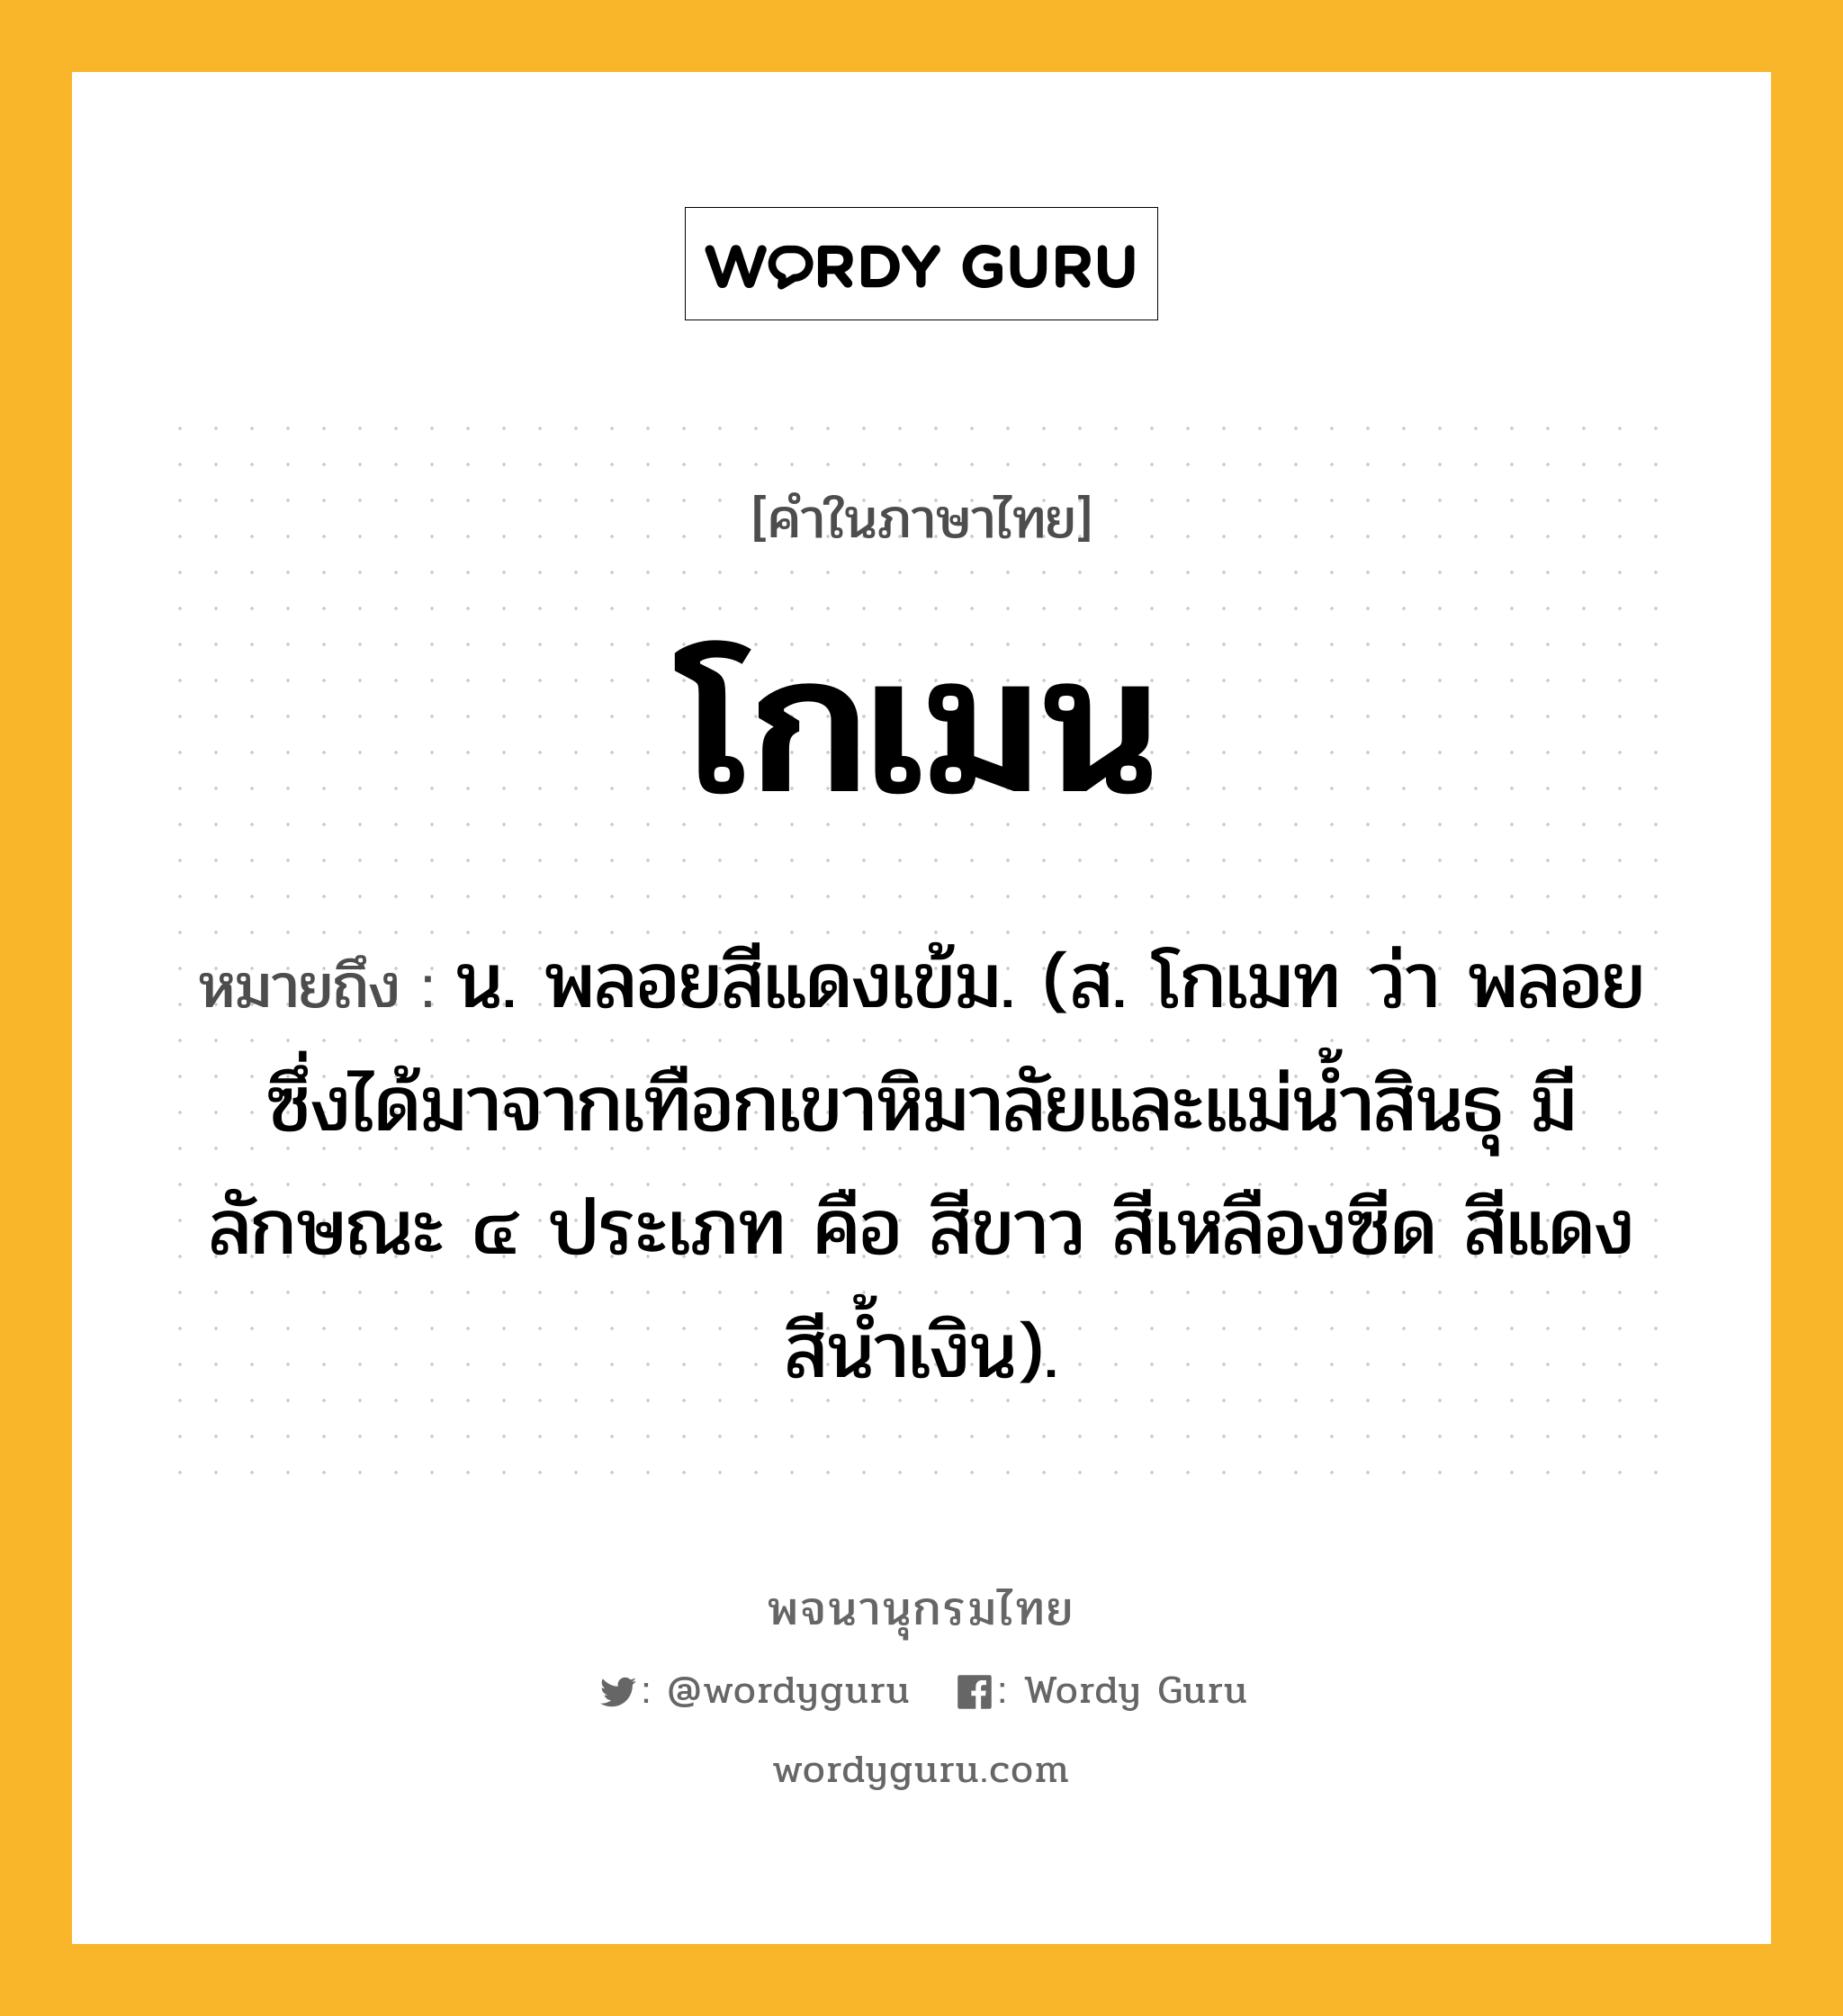 โกเมน ความหมาย หมายถึงอะไร?, คำในภาษาไทย โกเมน หมายถึง น. พลอยสีแดงเข้ม. (ส. โกเมท ว่า พลอยซึ่งได้มาจากเทือกเขาหิมาลัยและแม่นํ้าสินธุ มีลักษณะ ๔ ประเภท คือ สีขาว สีเหลืองซีด สีแดง สีนํ้าเงิน).